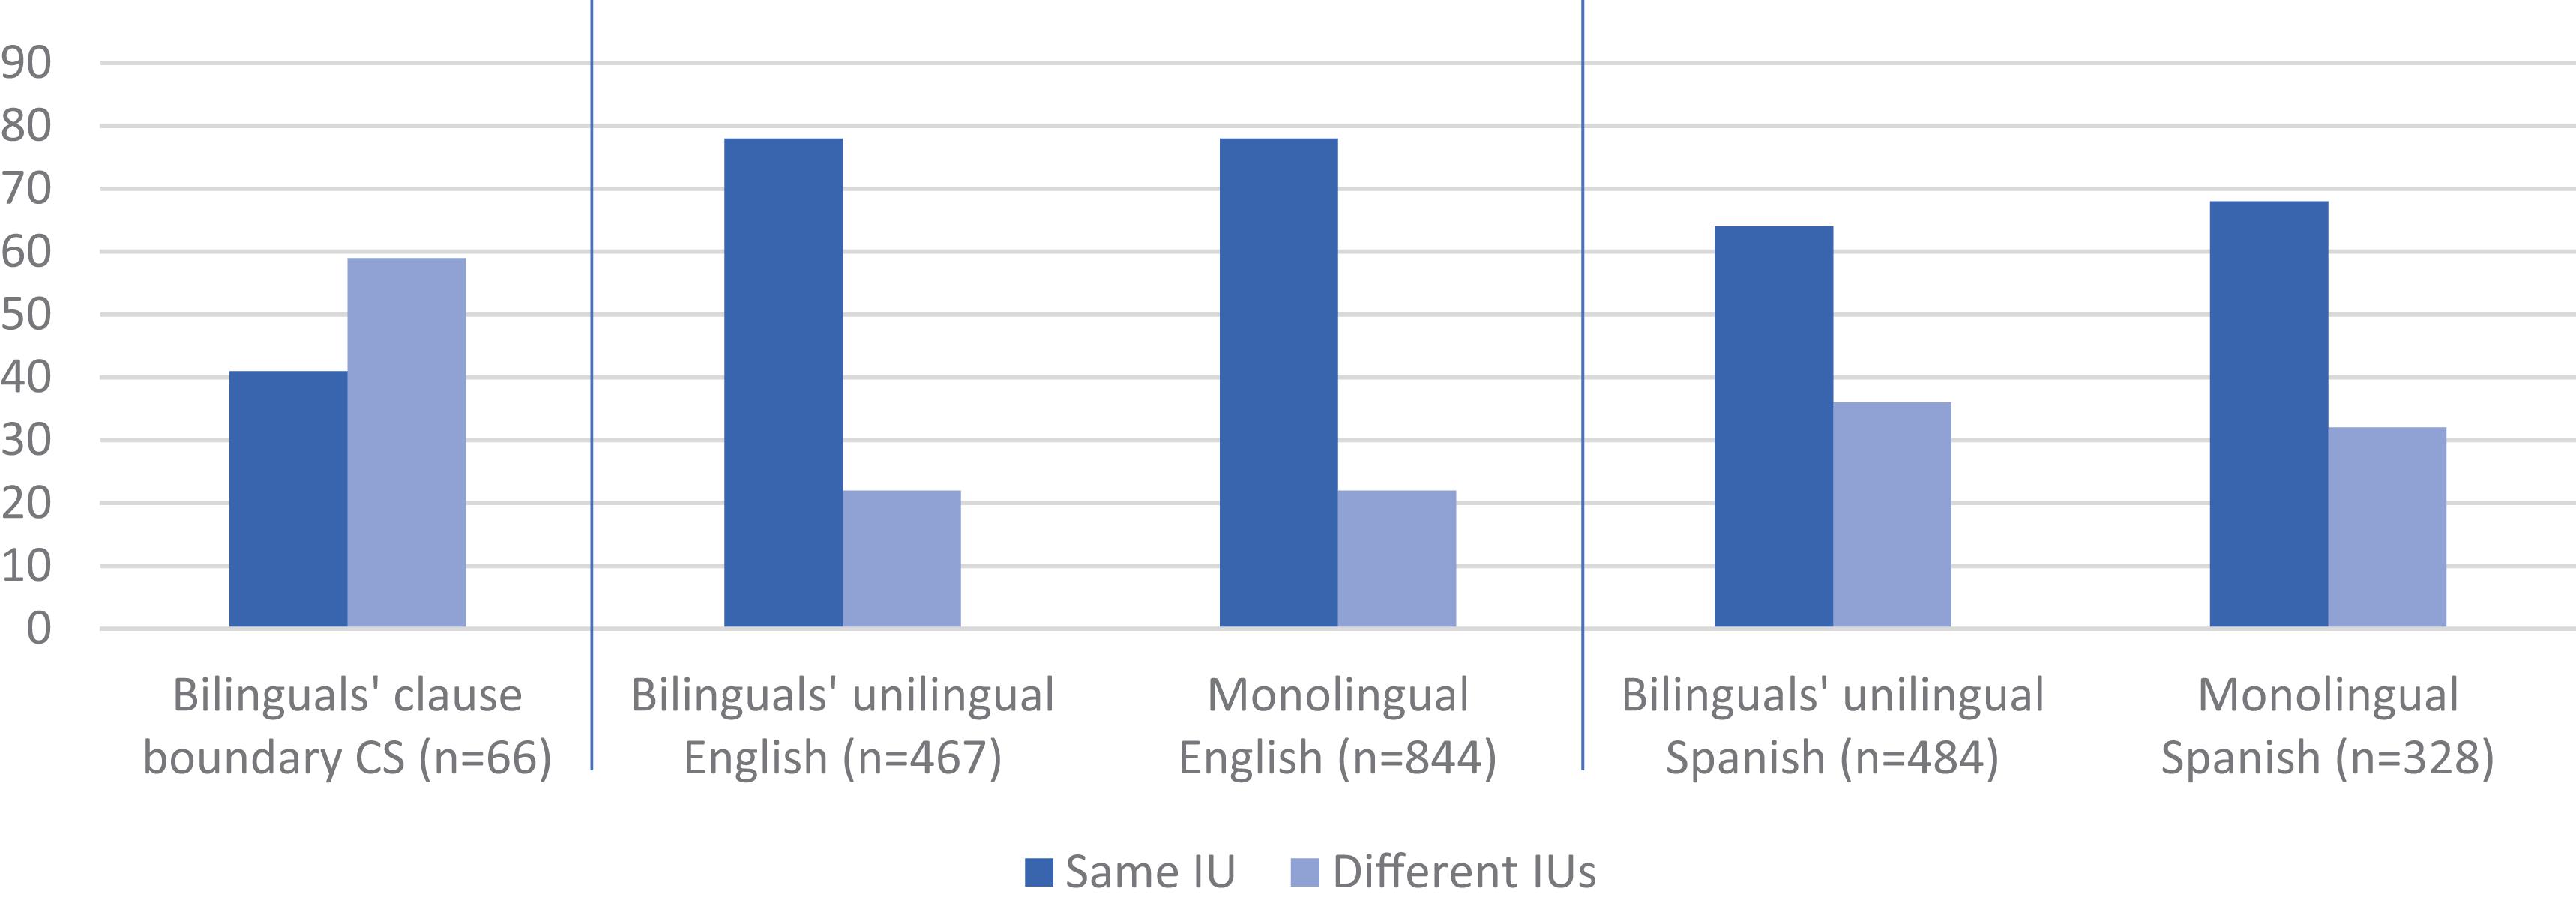 unilingual or monolingual